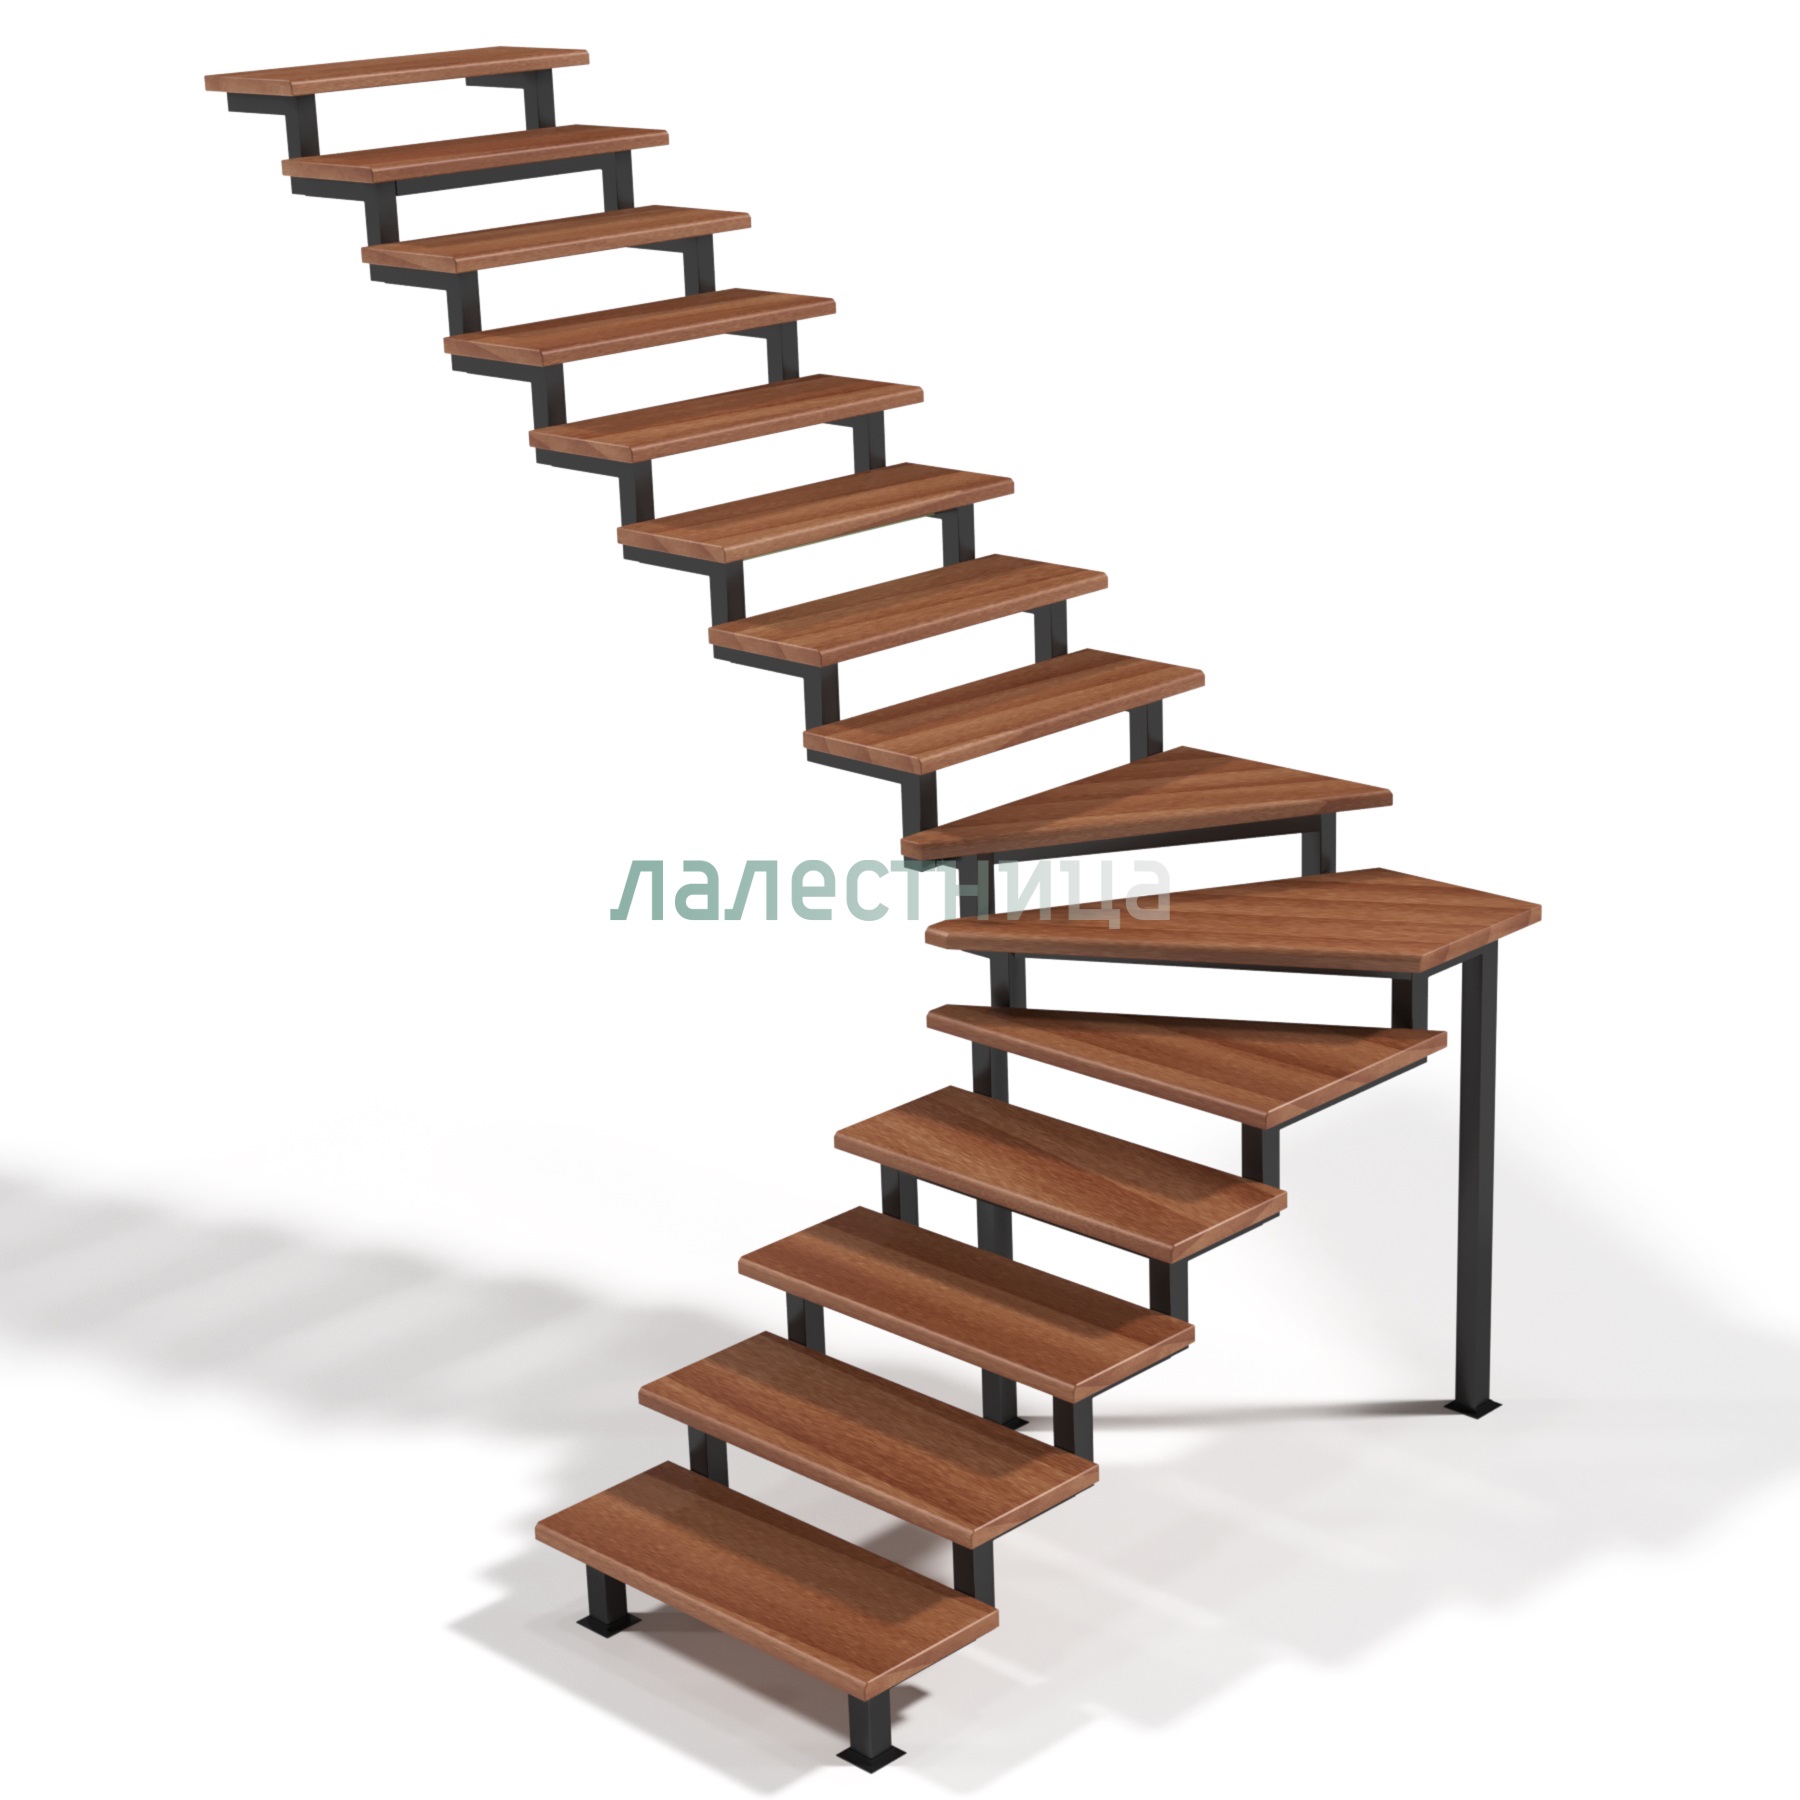 Как сделать лестницу своими руками из металла